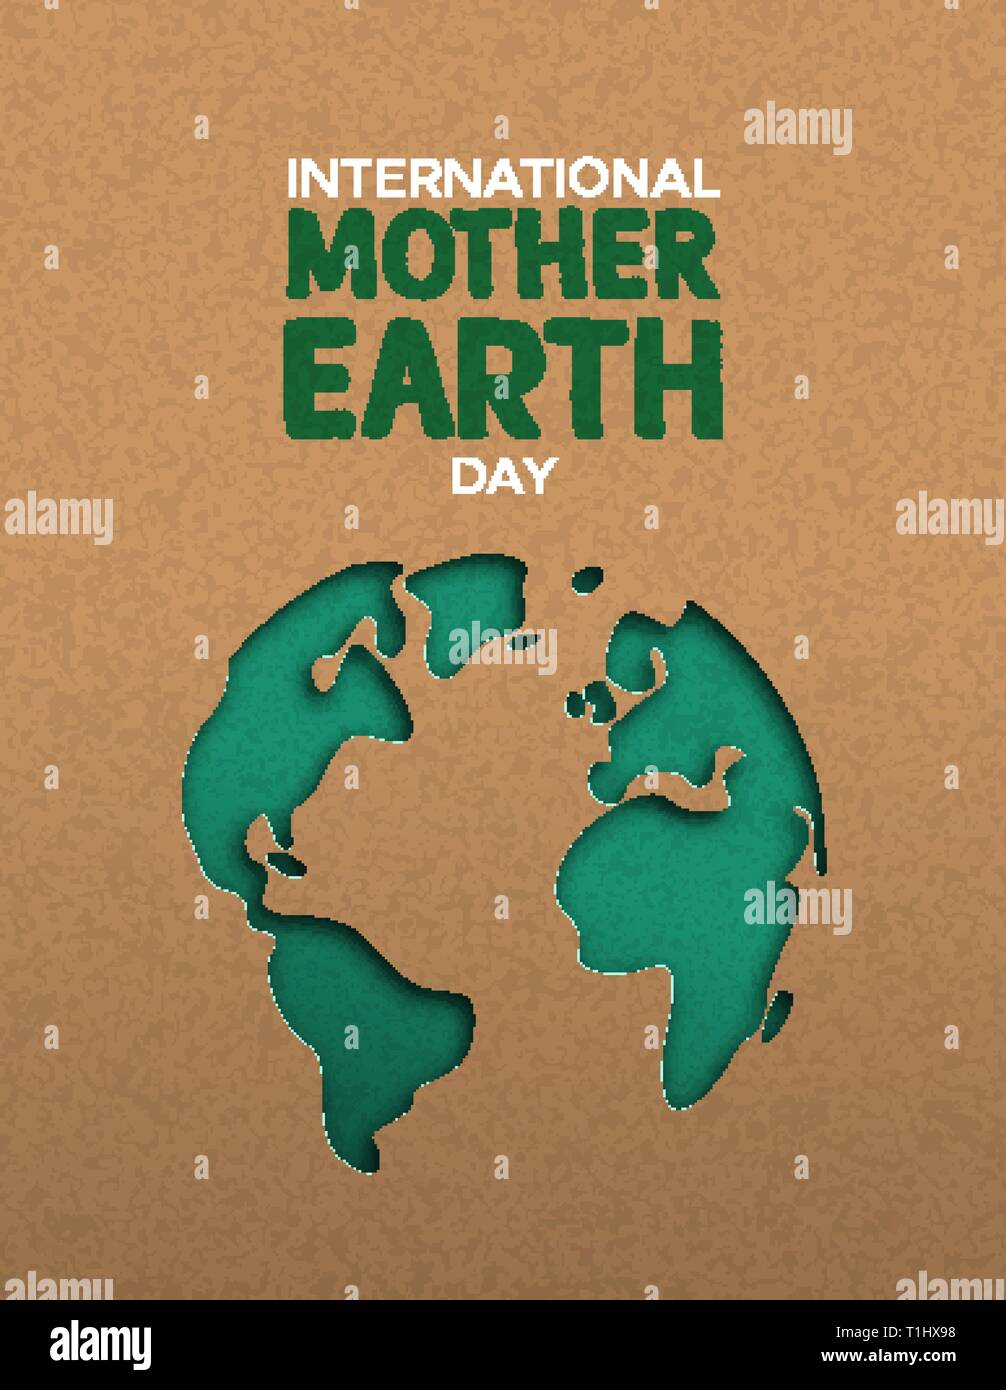 La Journée internationale de la Terre nourricière poster illustration de papercut vert carte du monde. Papier recyclé pour la sensibilisation à la conservation de la planète. Illustration de Vecteur